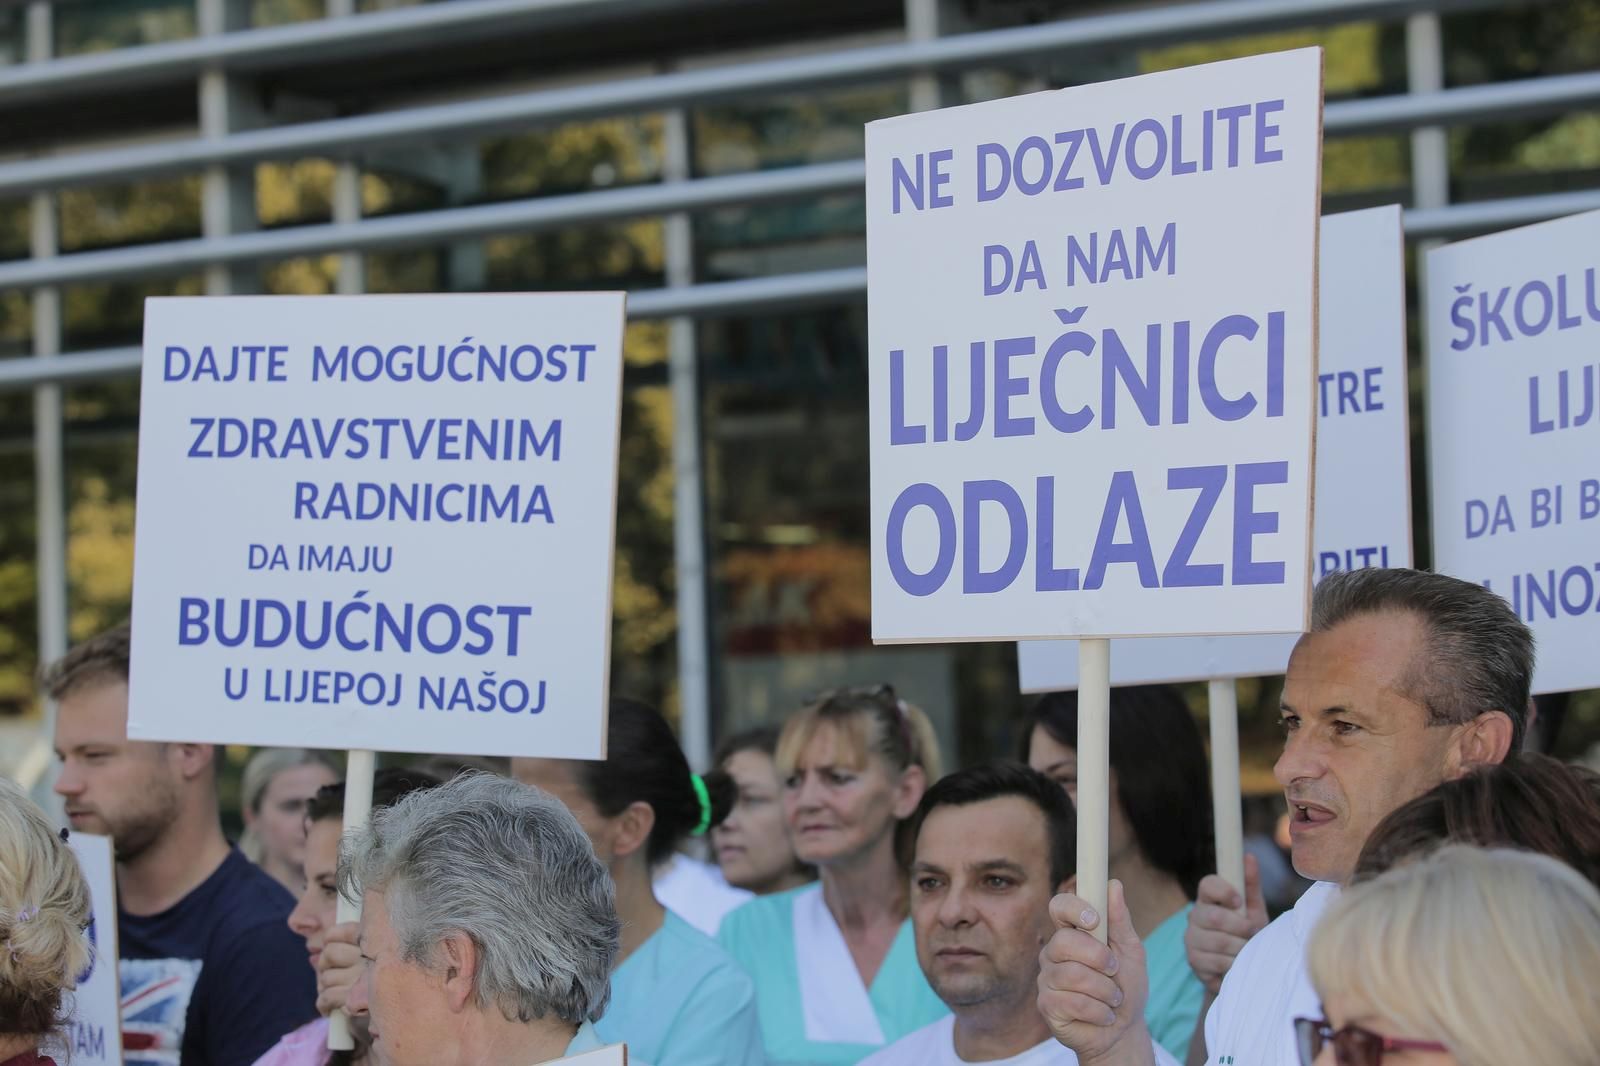 13.09.2019., Zagreb -Ispred KB Dubrava odrzan je mirni prosvjed 5 do 12. rPhoto: Tomislav Miletic/PIXSELL